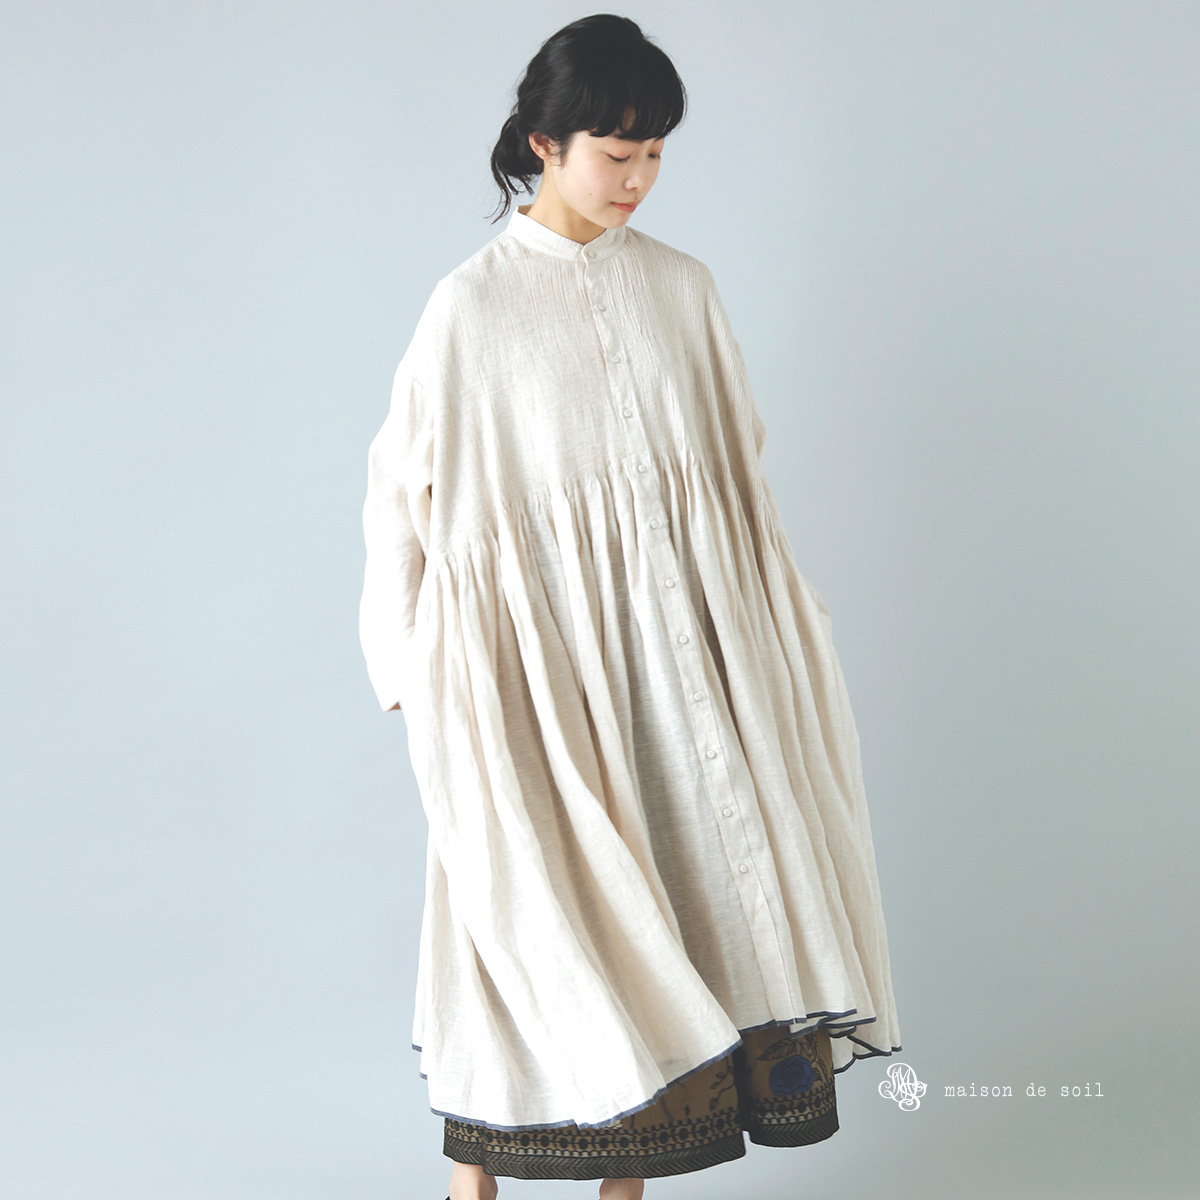 maison de soil(メゾン ド ソイル)リネンバンドカラーシャツドレス“Banded Shirt Dress With Mini  Pintuck” inmds22005 | iroma..aranciato